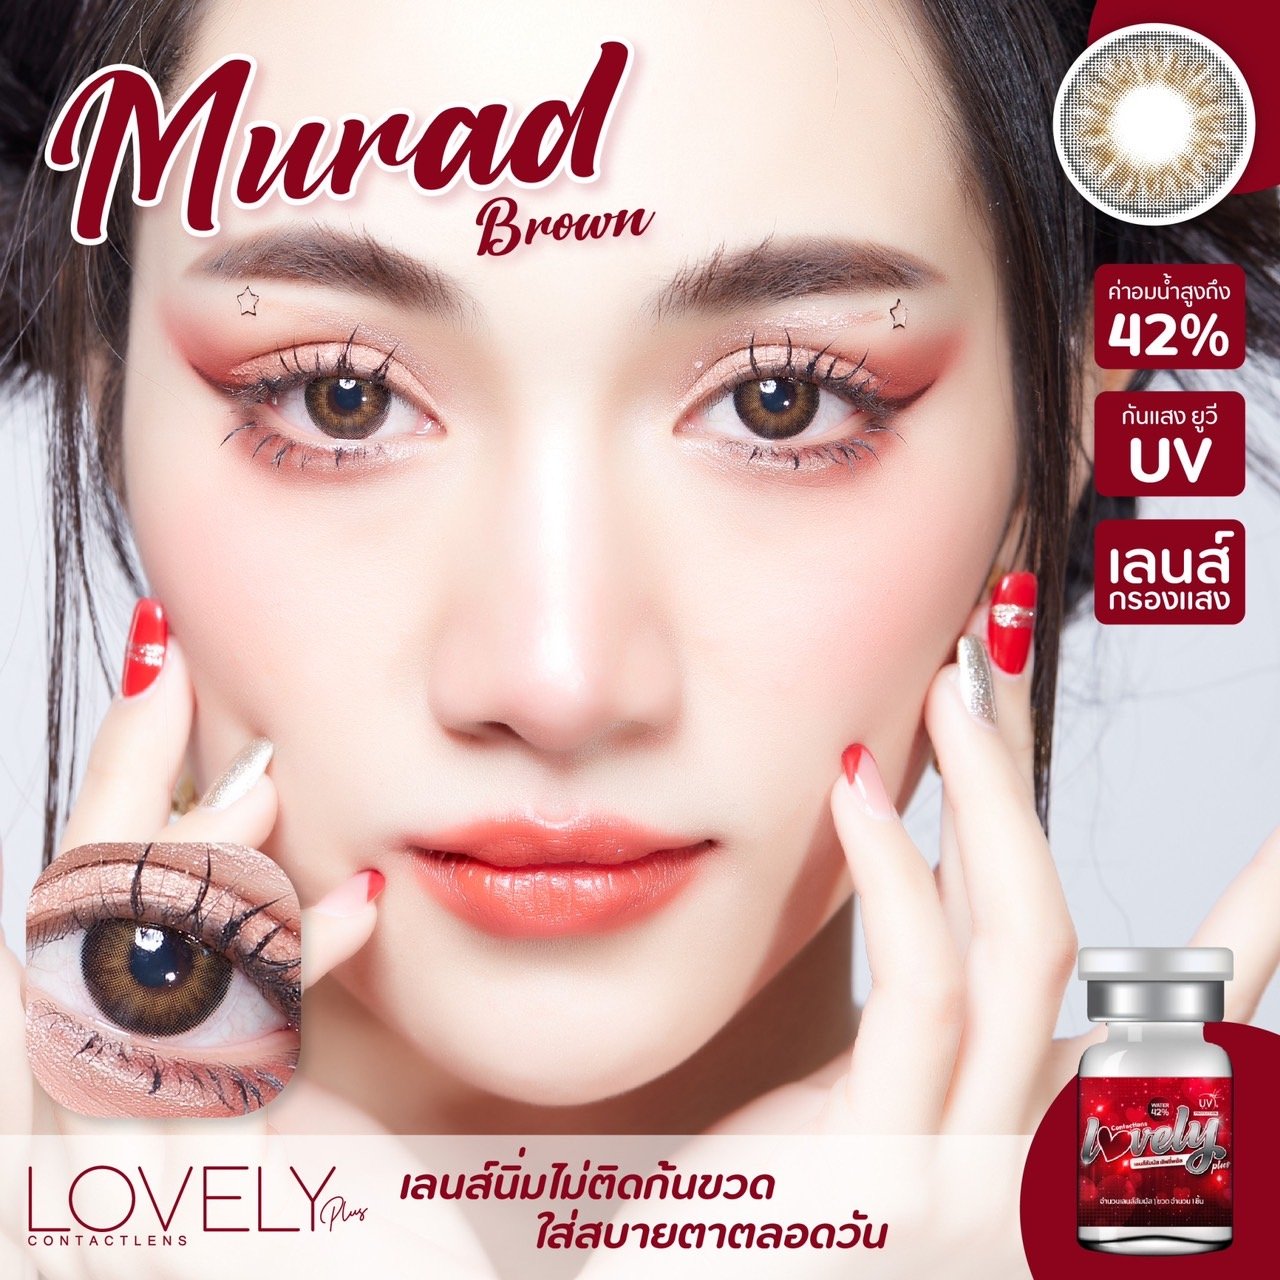 Murad brown